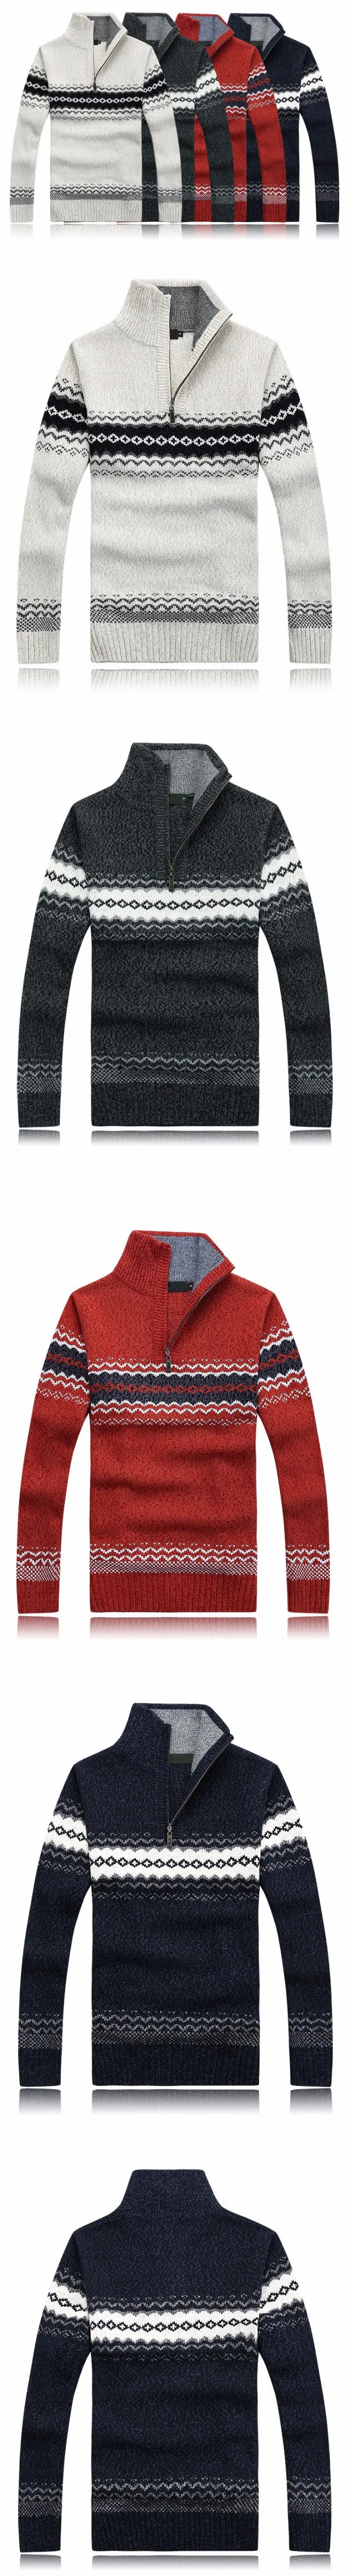 Для Мужчин's Свитеры для женщин зима теплый толстый свитер пальто молнии воротник Повседневное Для мужчин Свитеры для женщин узор Трикотаж большой Размеры пуловер 3XL 2XL